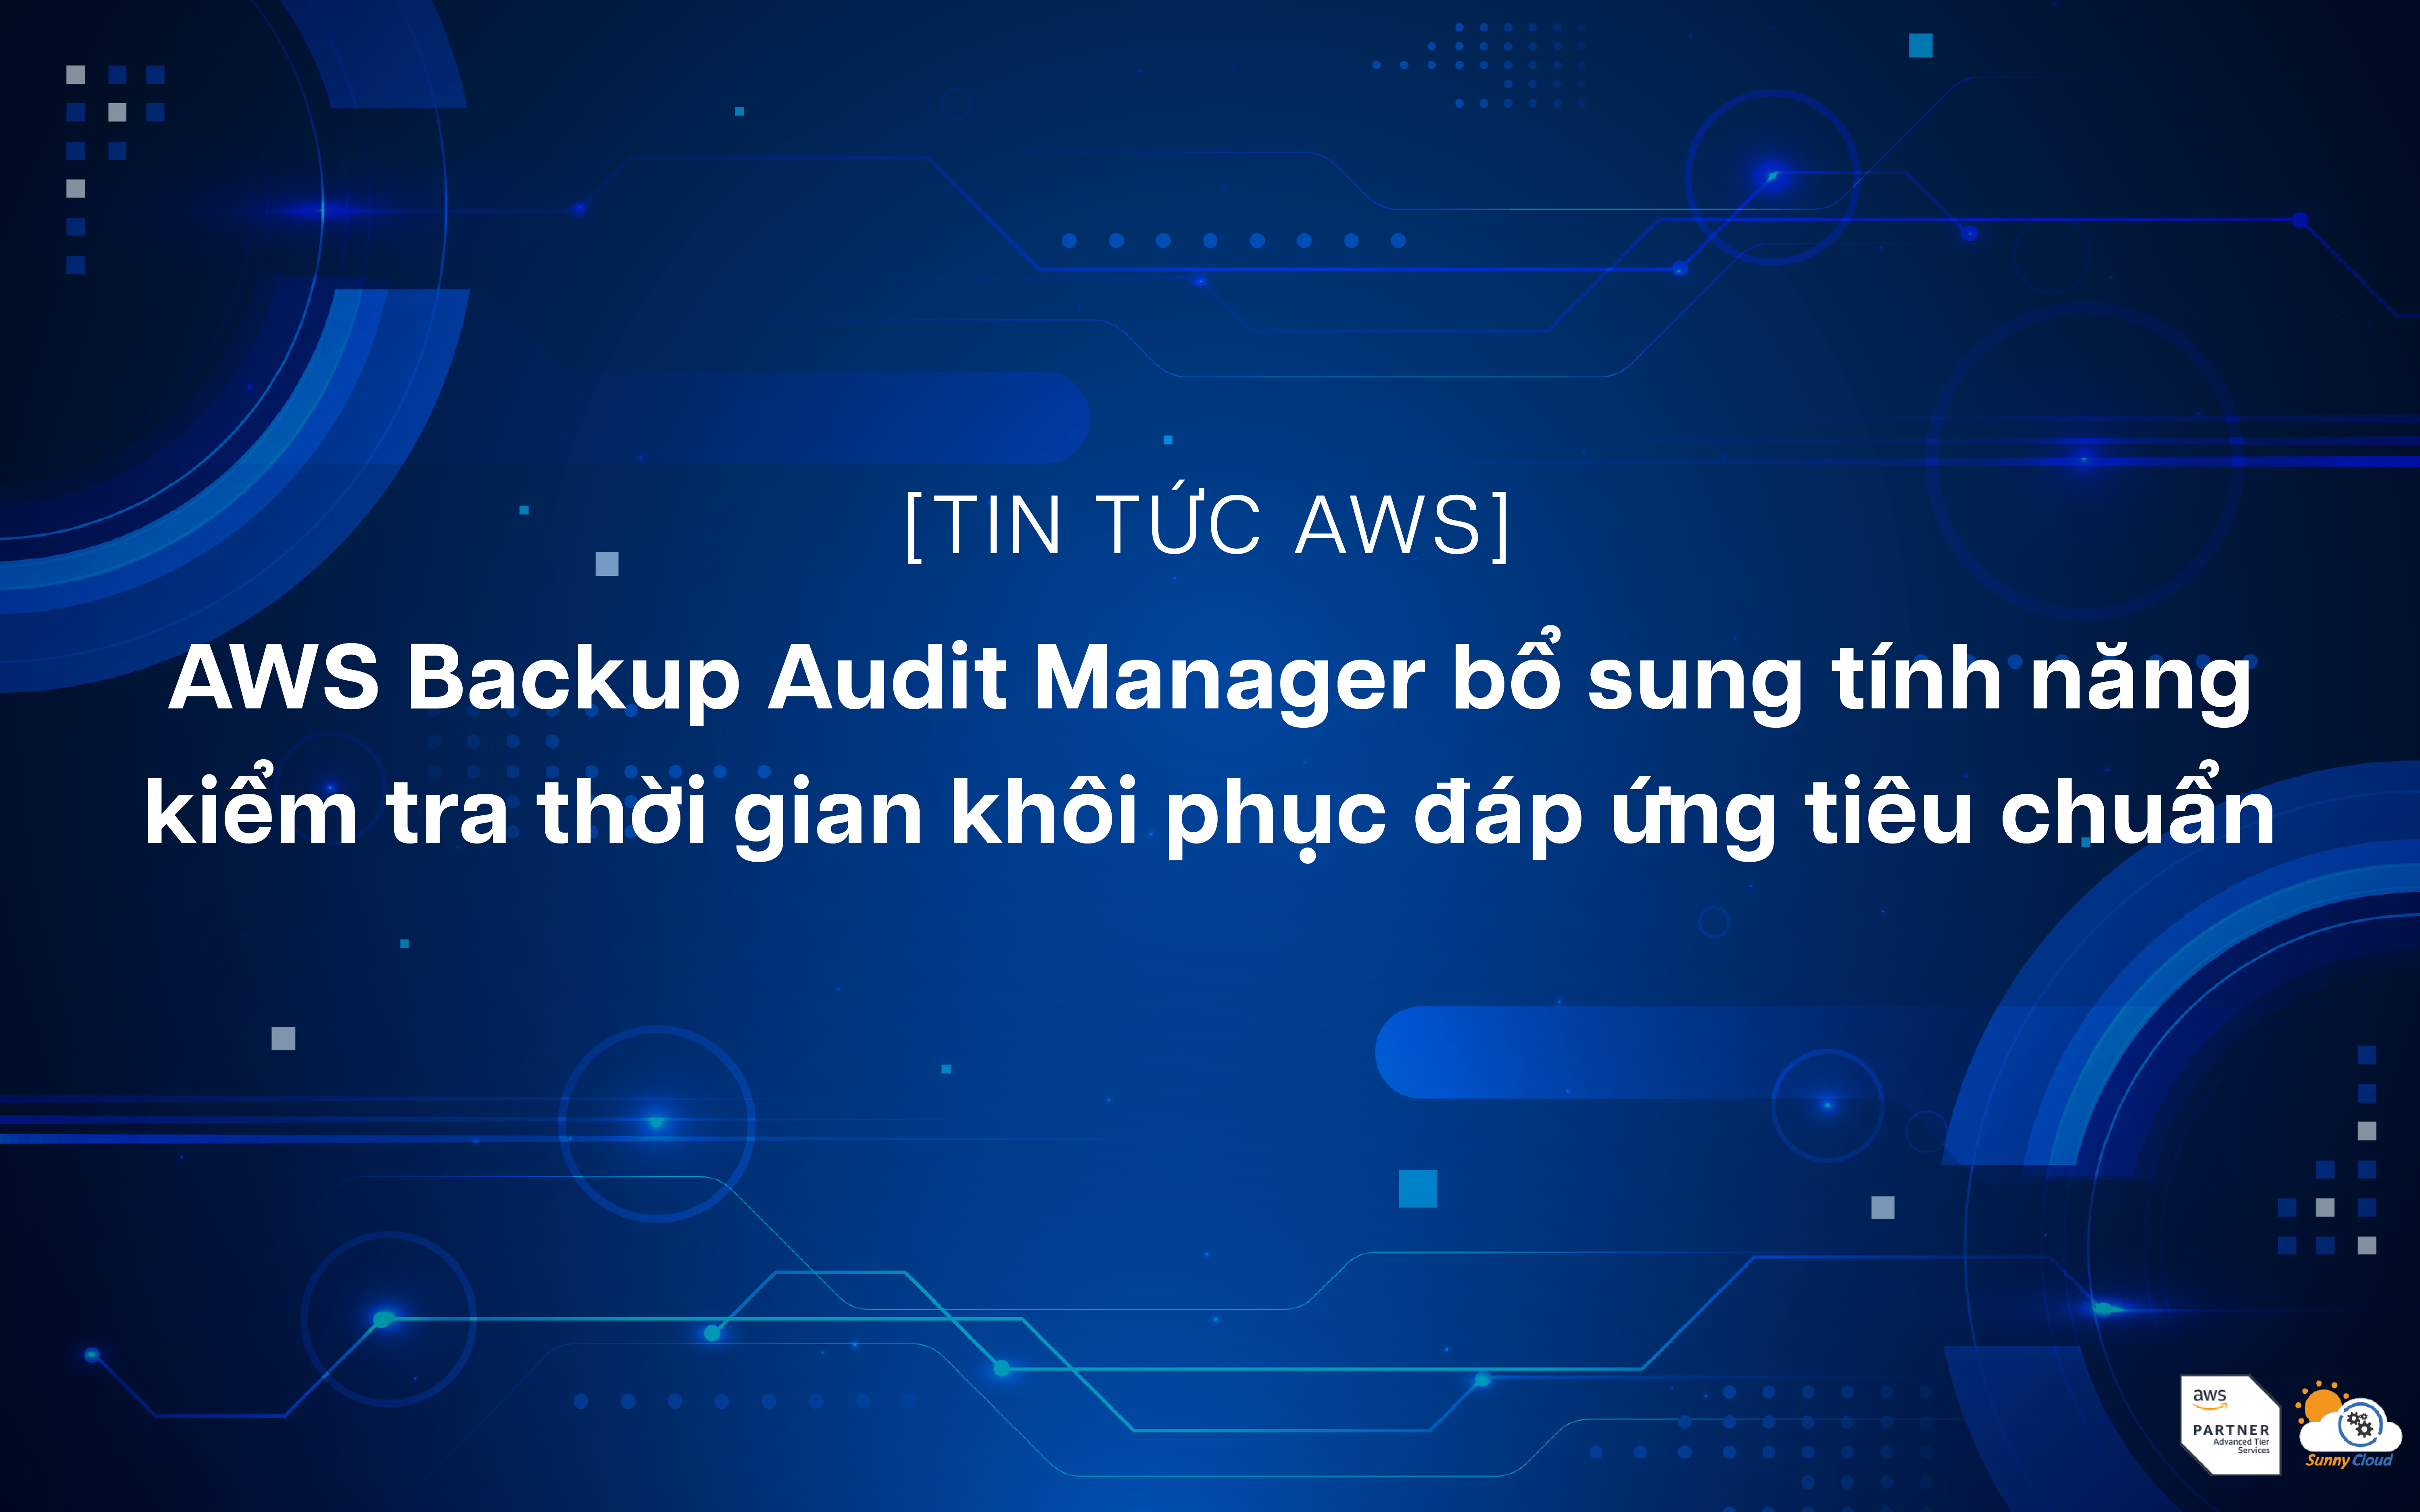 AWS Backup Audit Manager bổ sung tính năng kiểm tra thời gian khôi phục đáp ứng tiêu chuẩn